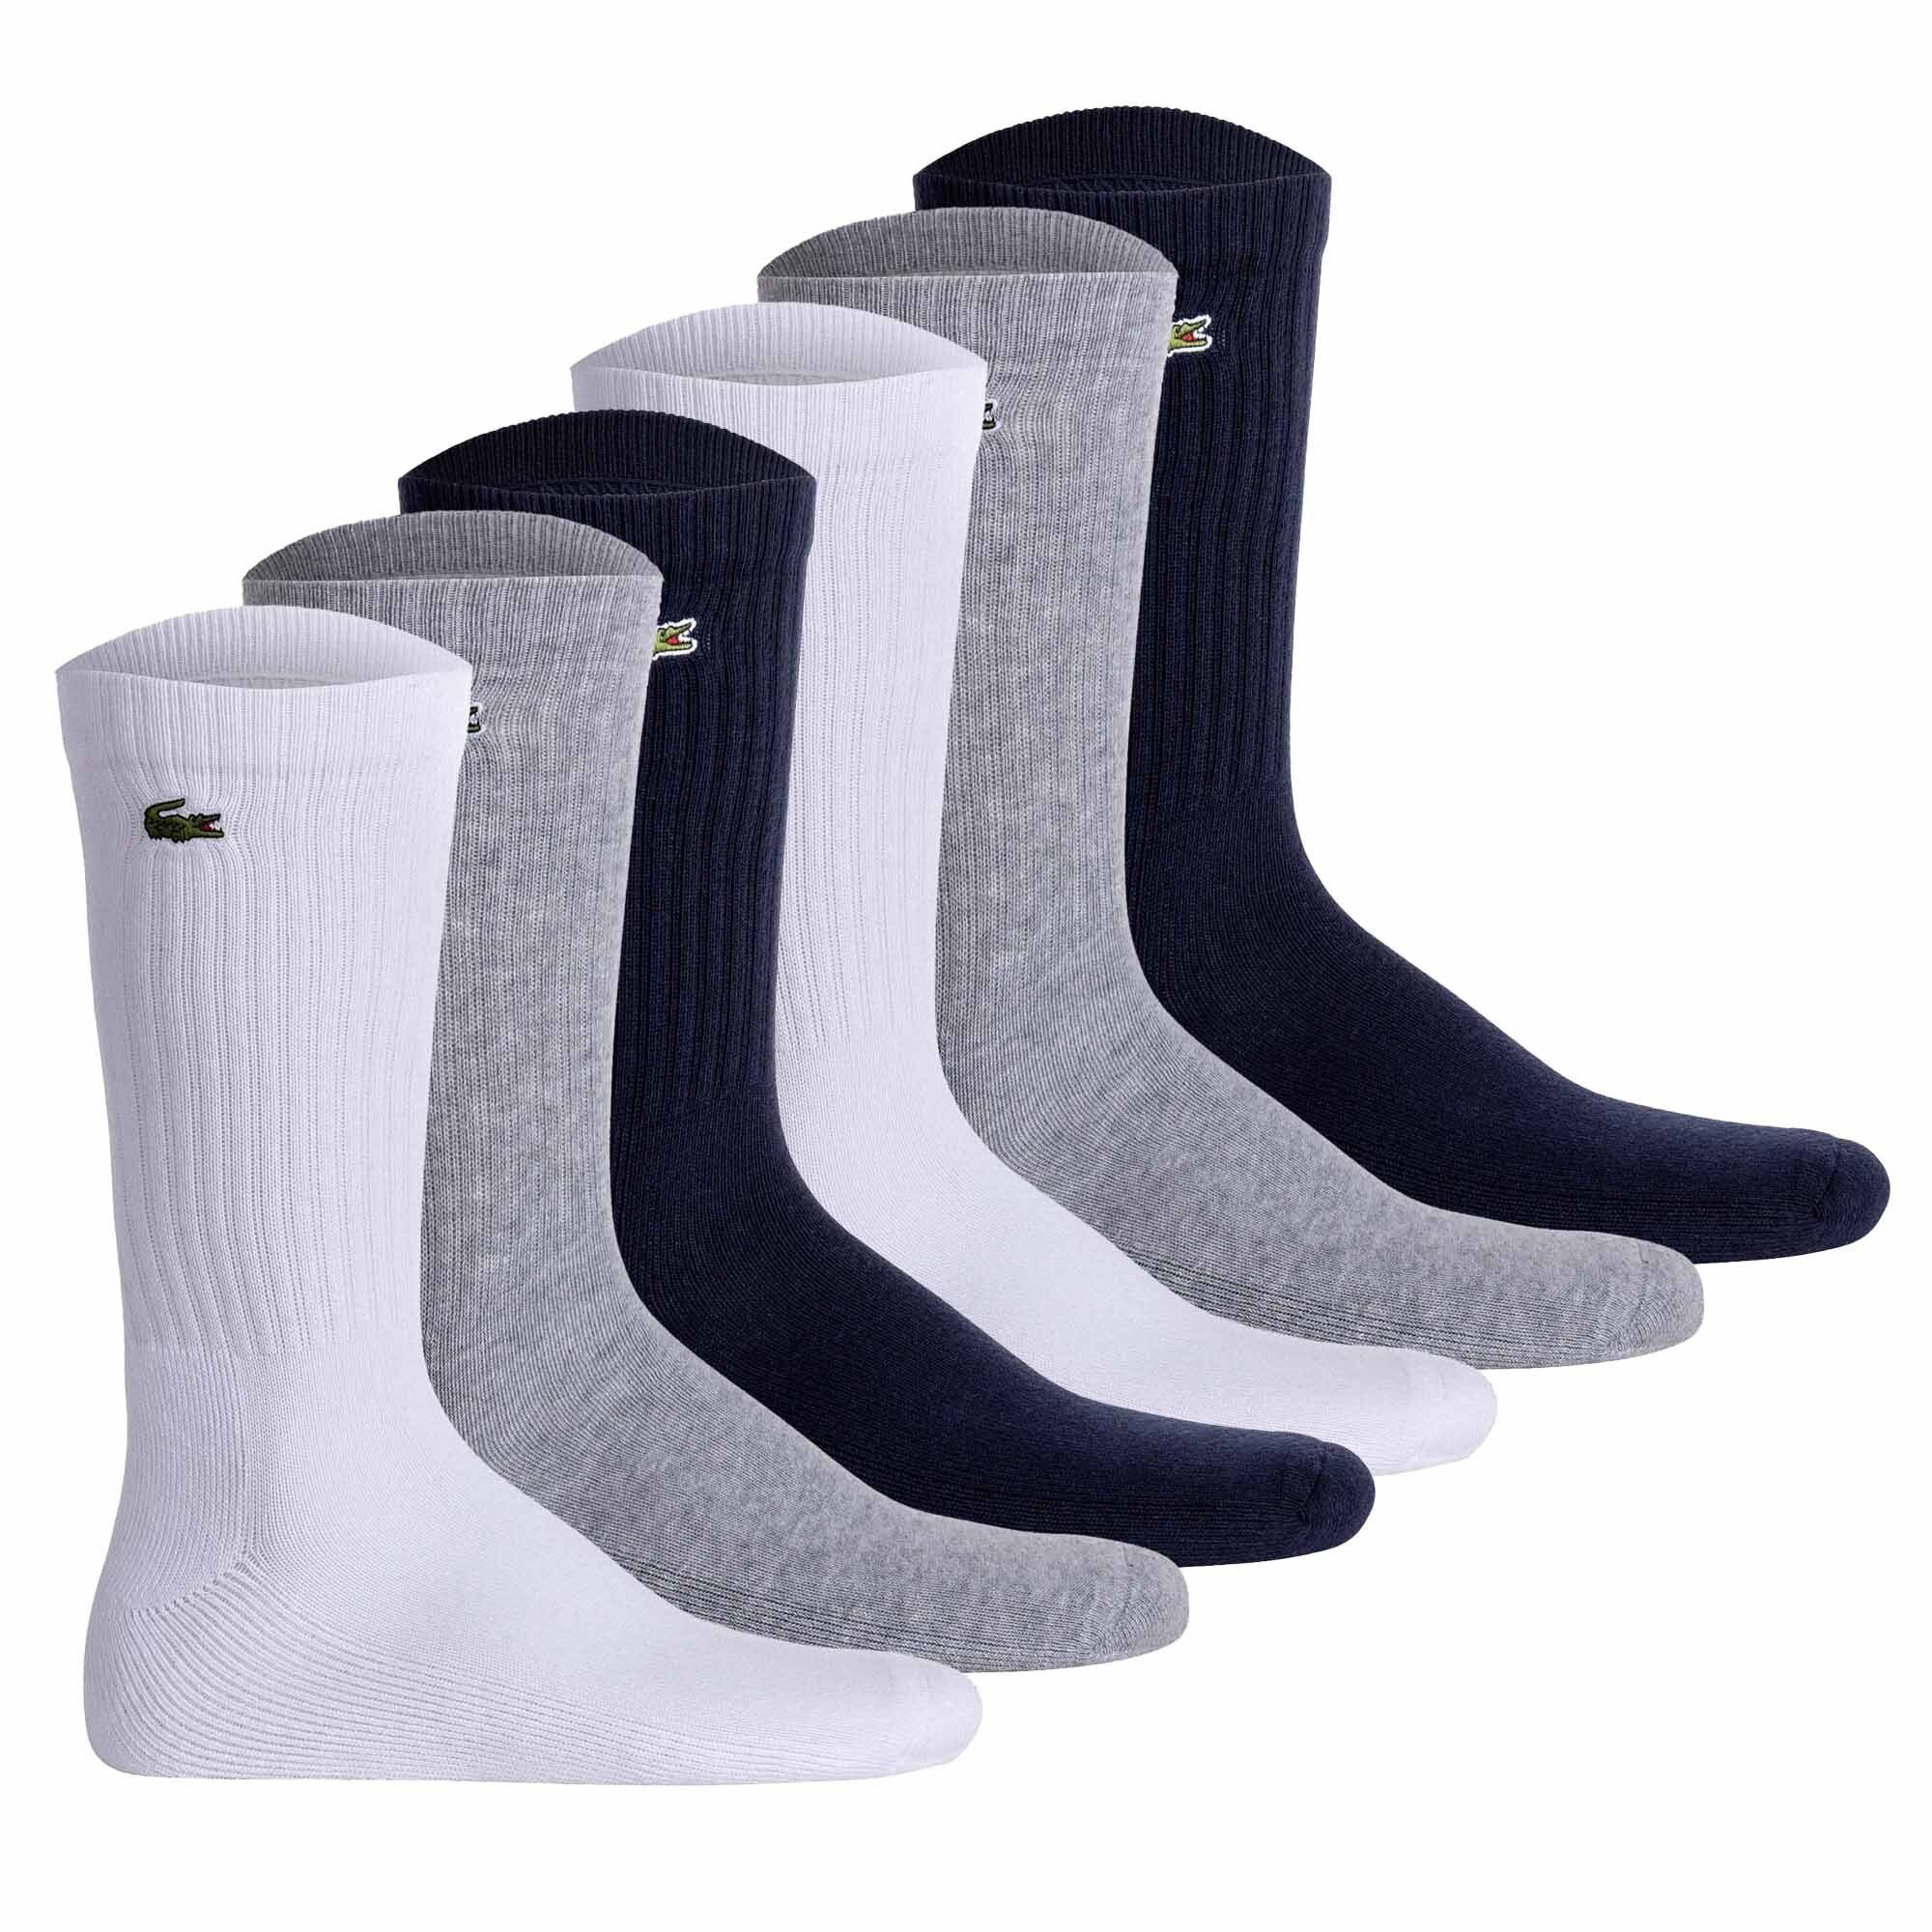 Weiß/Grau/Dunkelblau Socken, Tennissocken Pack Kurzsocken Unisex - 6er Lacoste